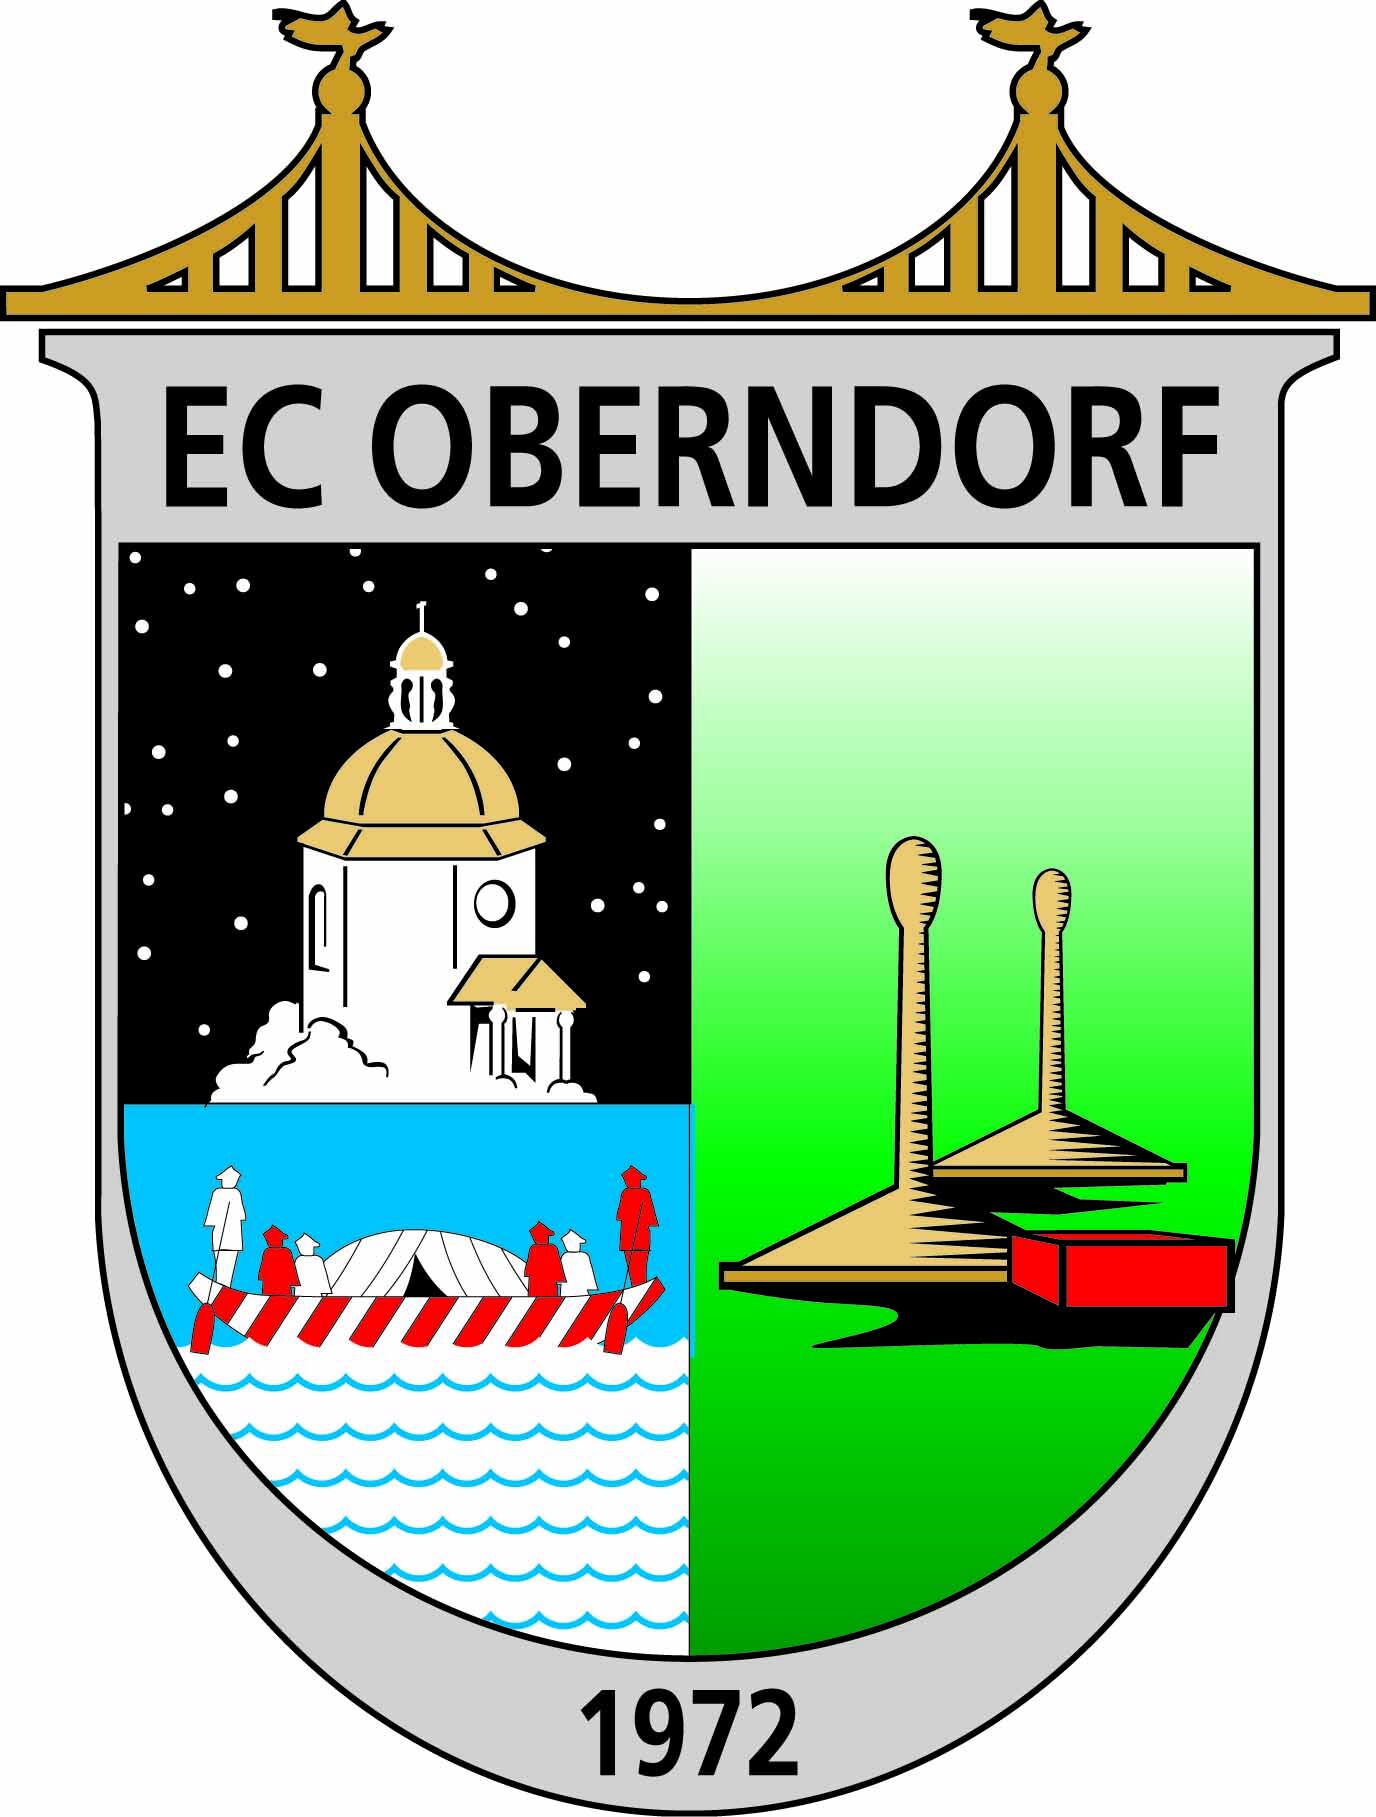 EC Oberndorf